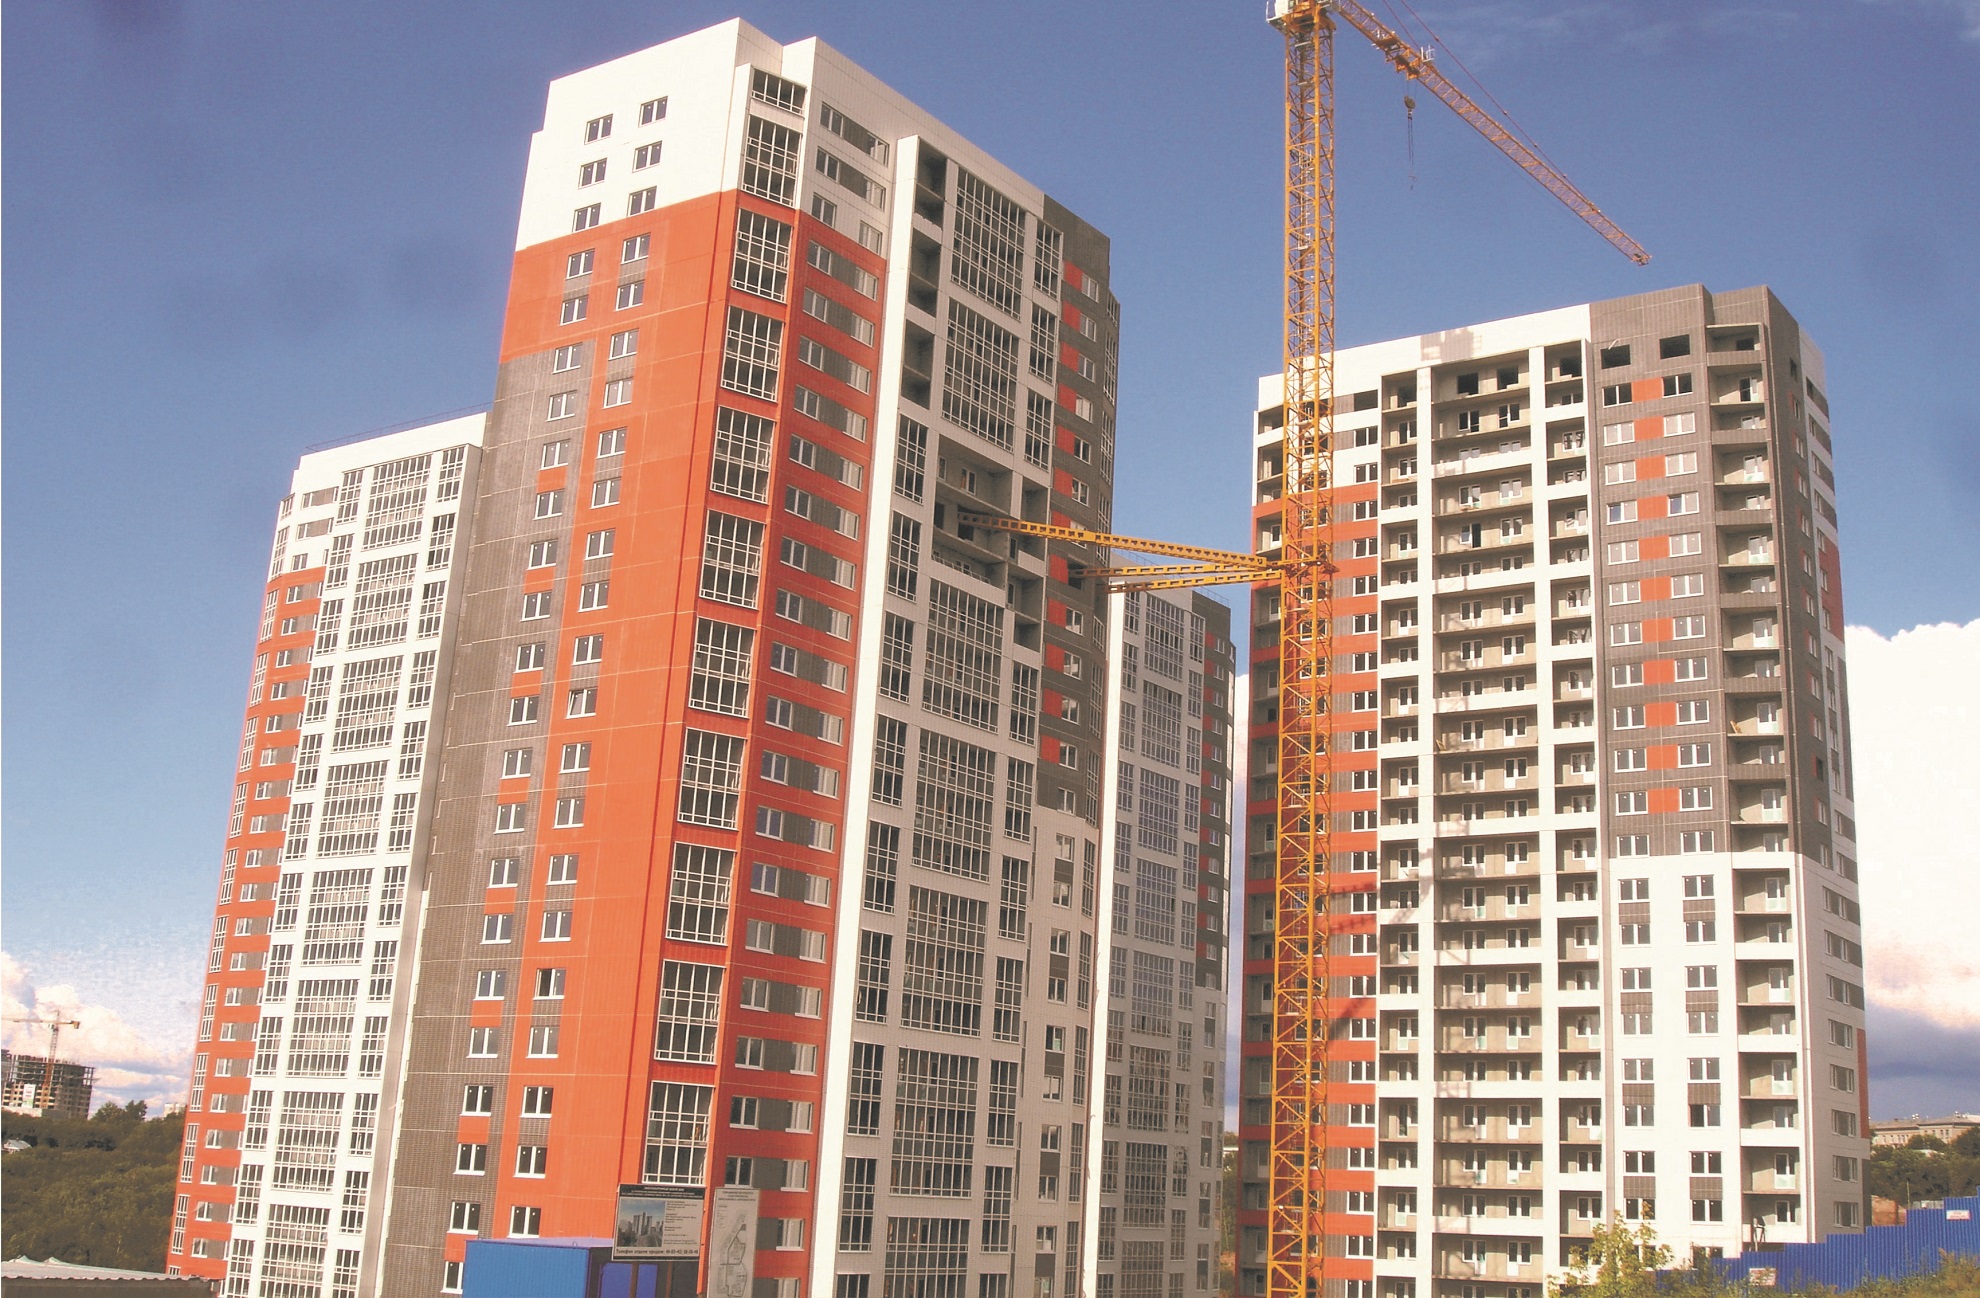 Строительство 7-ми 25-ти этажных домов КПД. Все элементы изготовлены на универсальном стенде ЗАО 